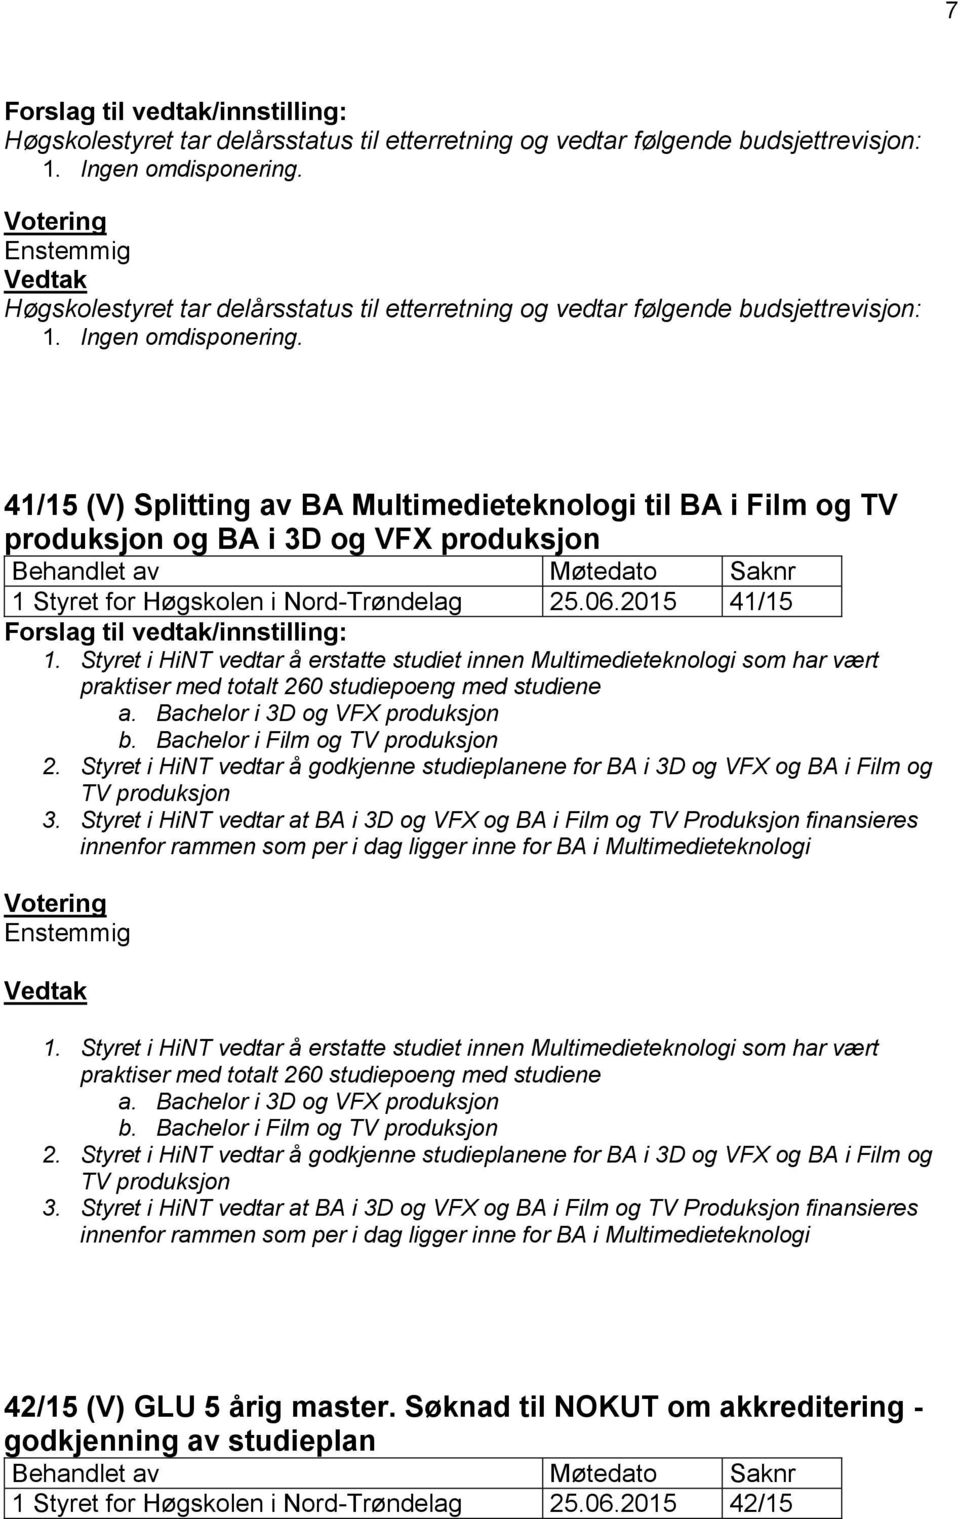 41/15 (V) Splitting av BA Multimedieteknologi til BA i Film og TV produksjon og BA i 3D og VFX produksjon Behandlet av Møtedato Saknr 1 Styret for Høgskolen i Nord-Trøndelag 25.06.